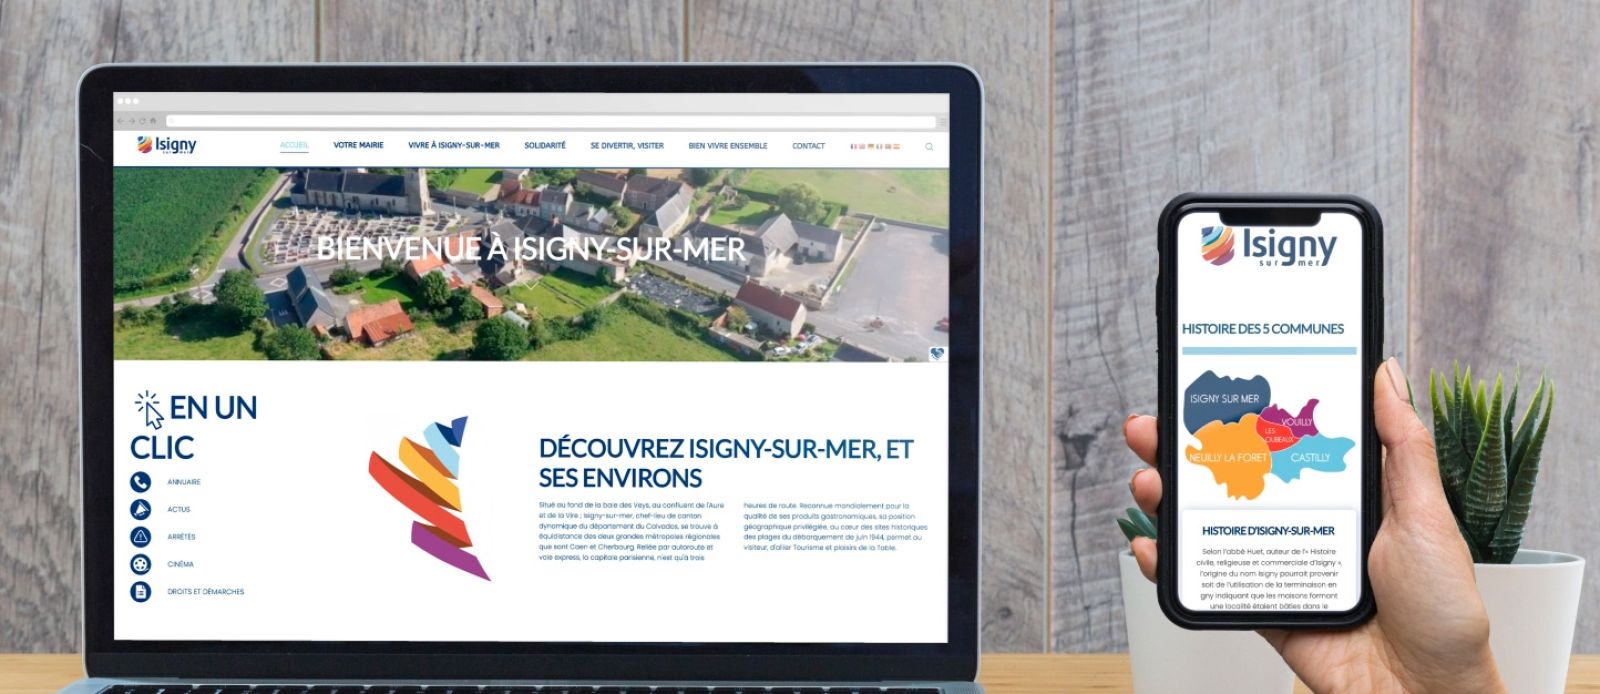 Site web d'Isigny-sur-mer réalisé par l'agence WSF